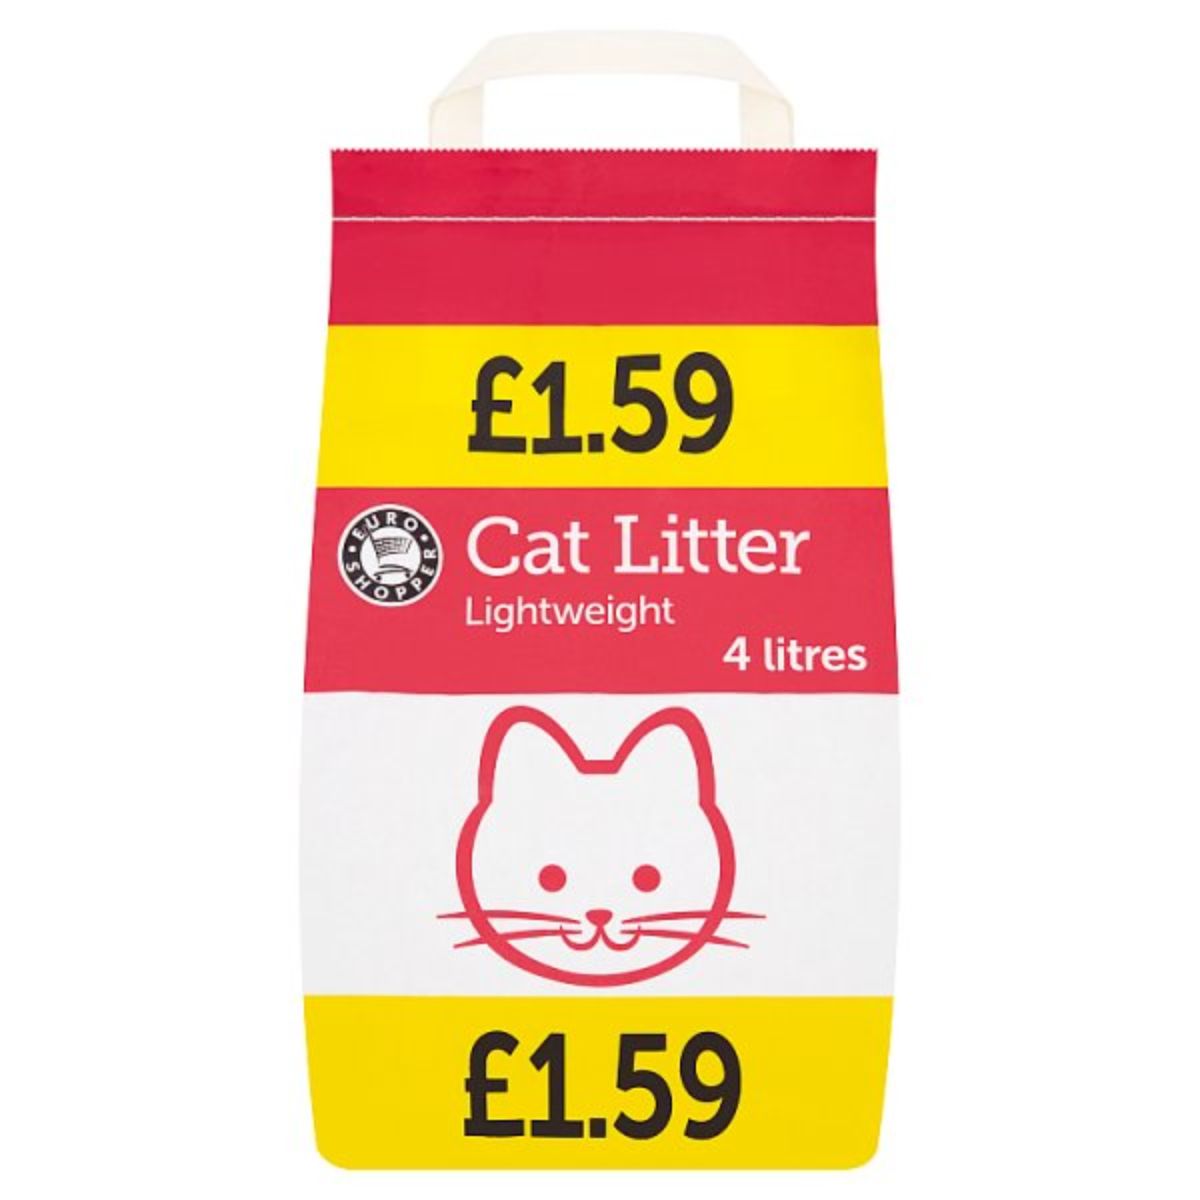 Euro Shopper Cat Litter - 4L.